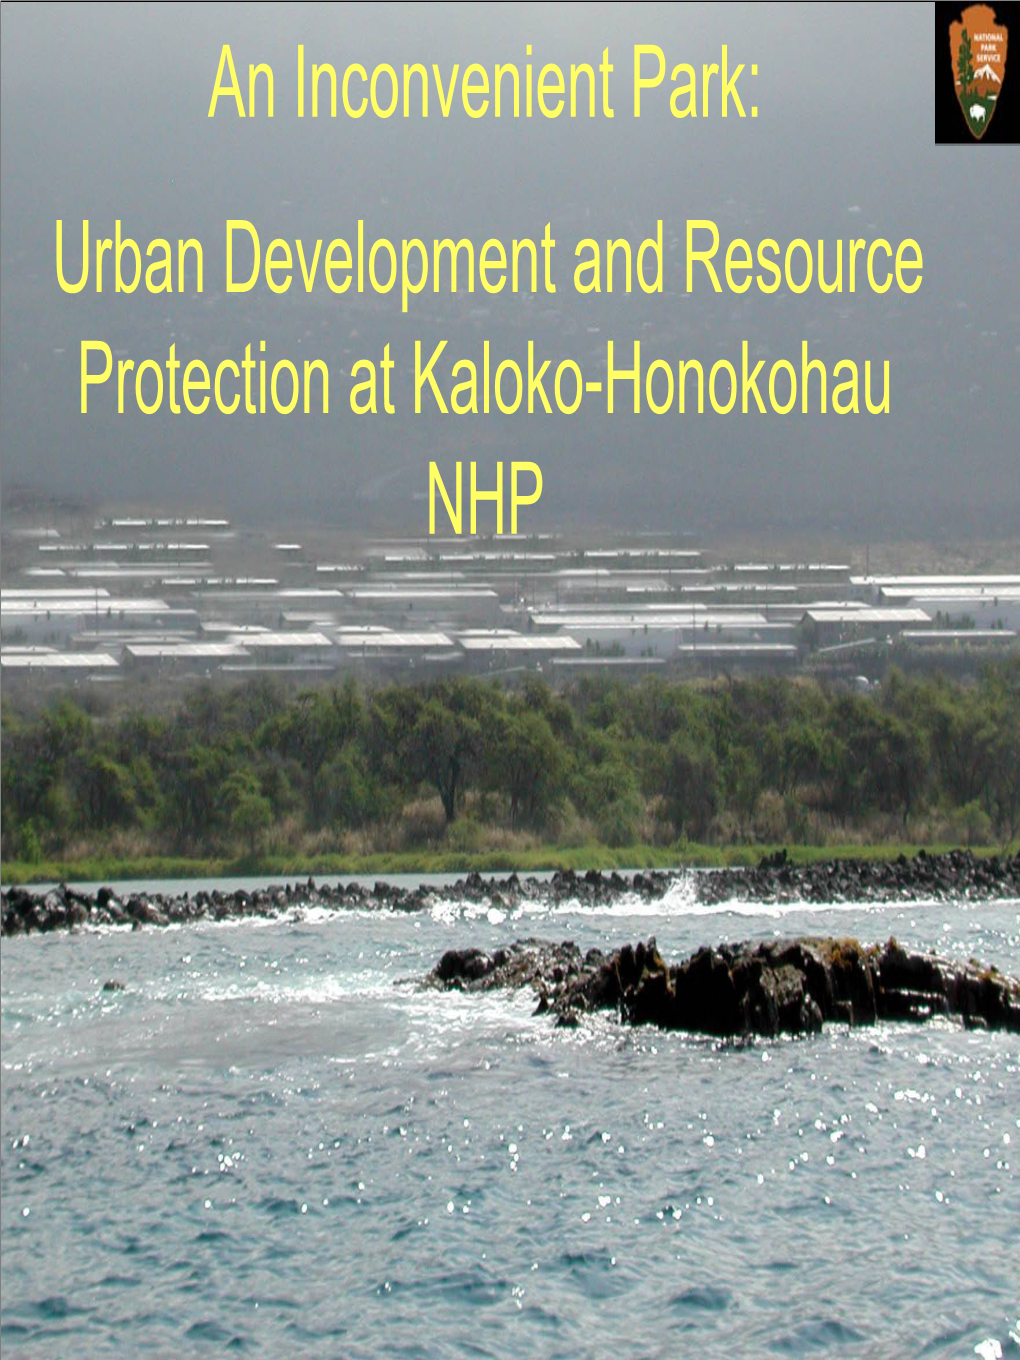 Urban Development and Resource Protection at Kaloko-Honokohau